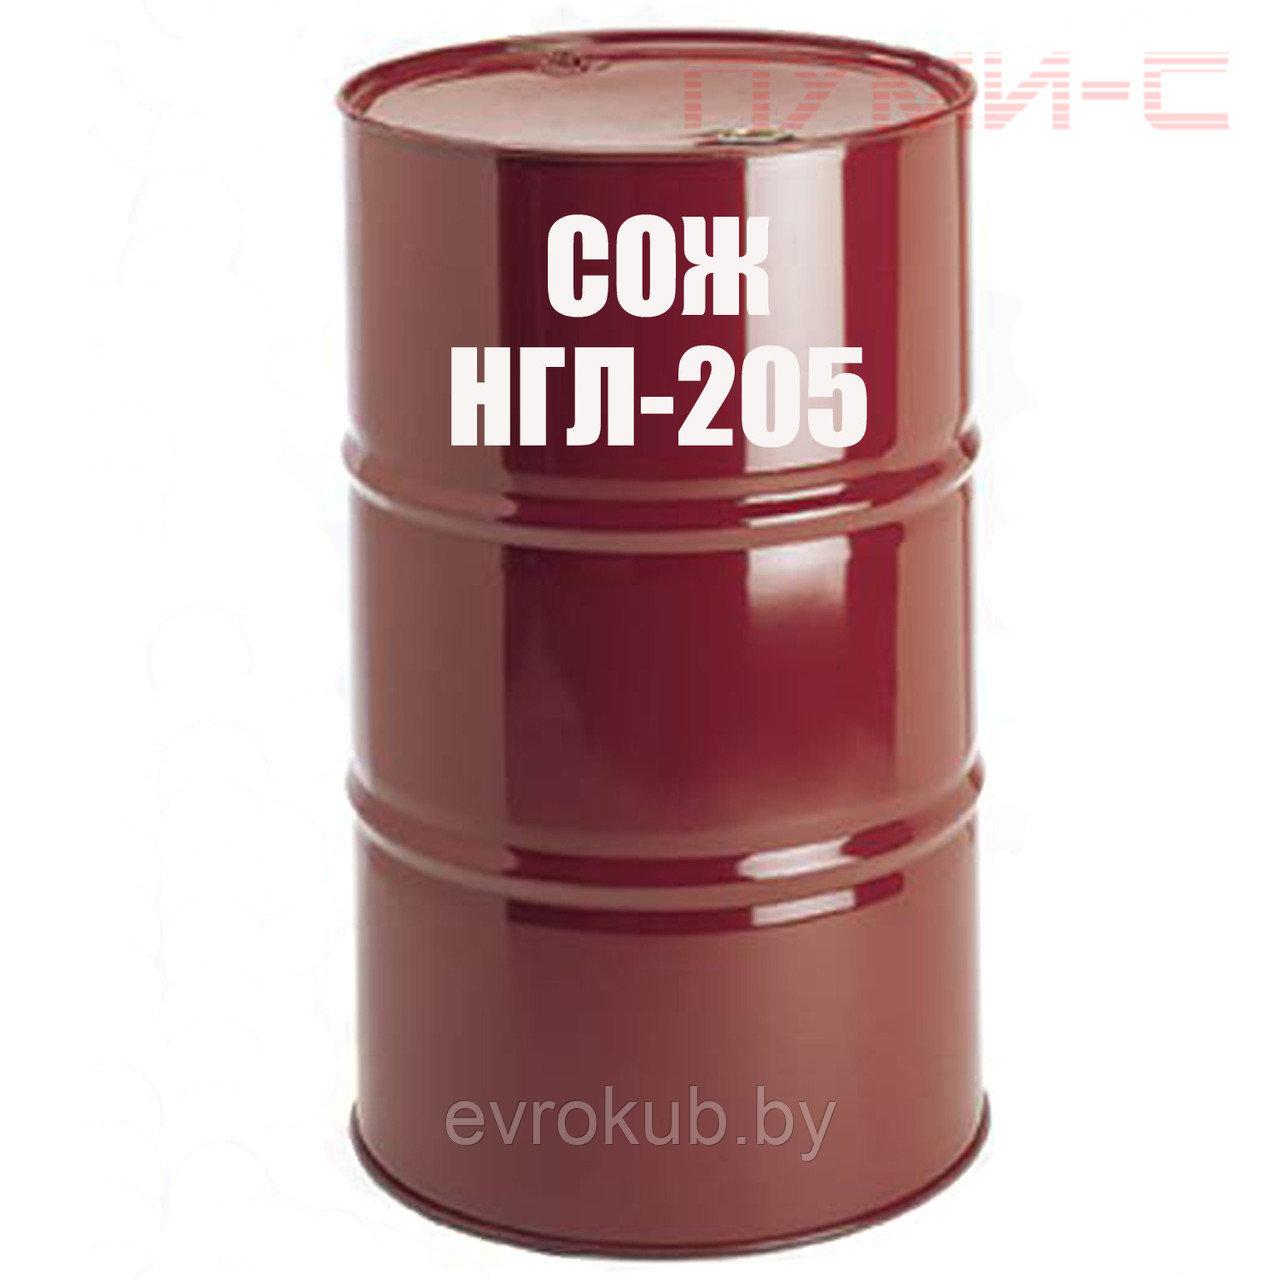 Смазочно-охлаждающая жидкость Концентрат НГЛ-205 (200 литров)